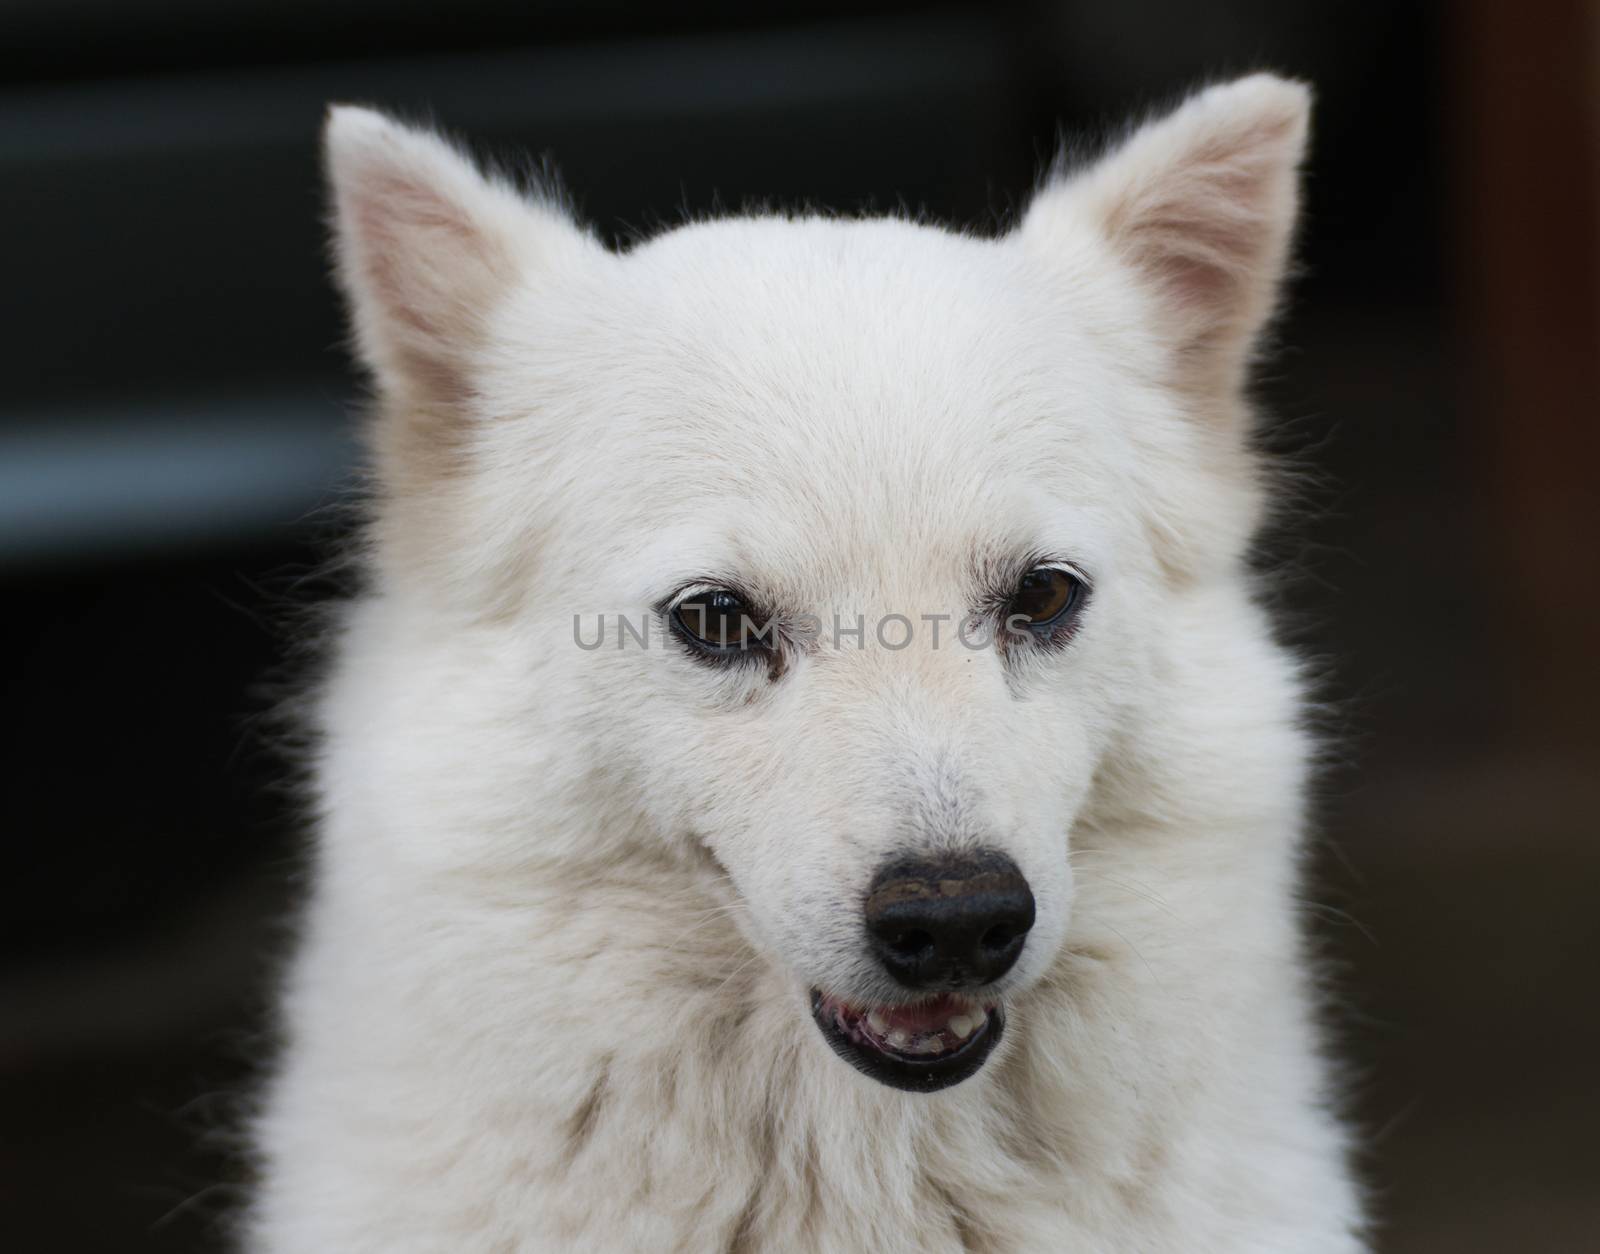 Portrait of a cute shih tzu breed dog